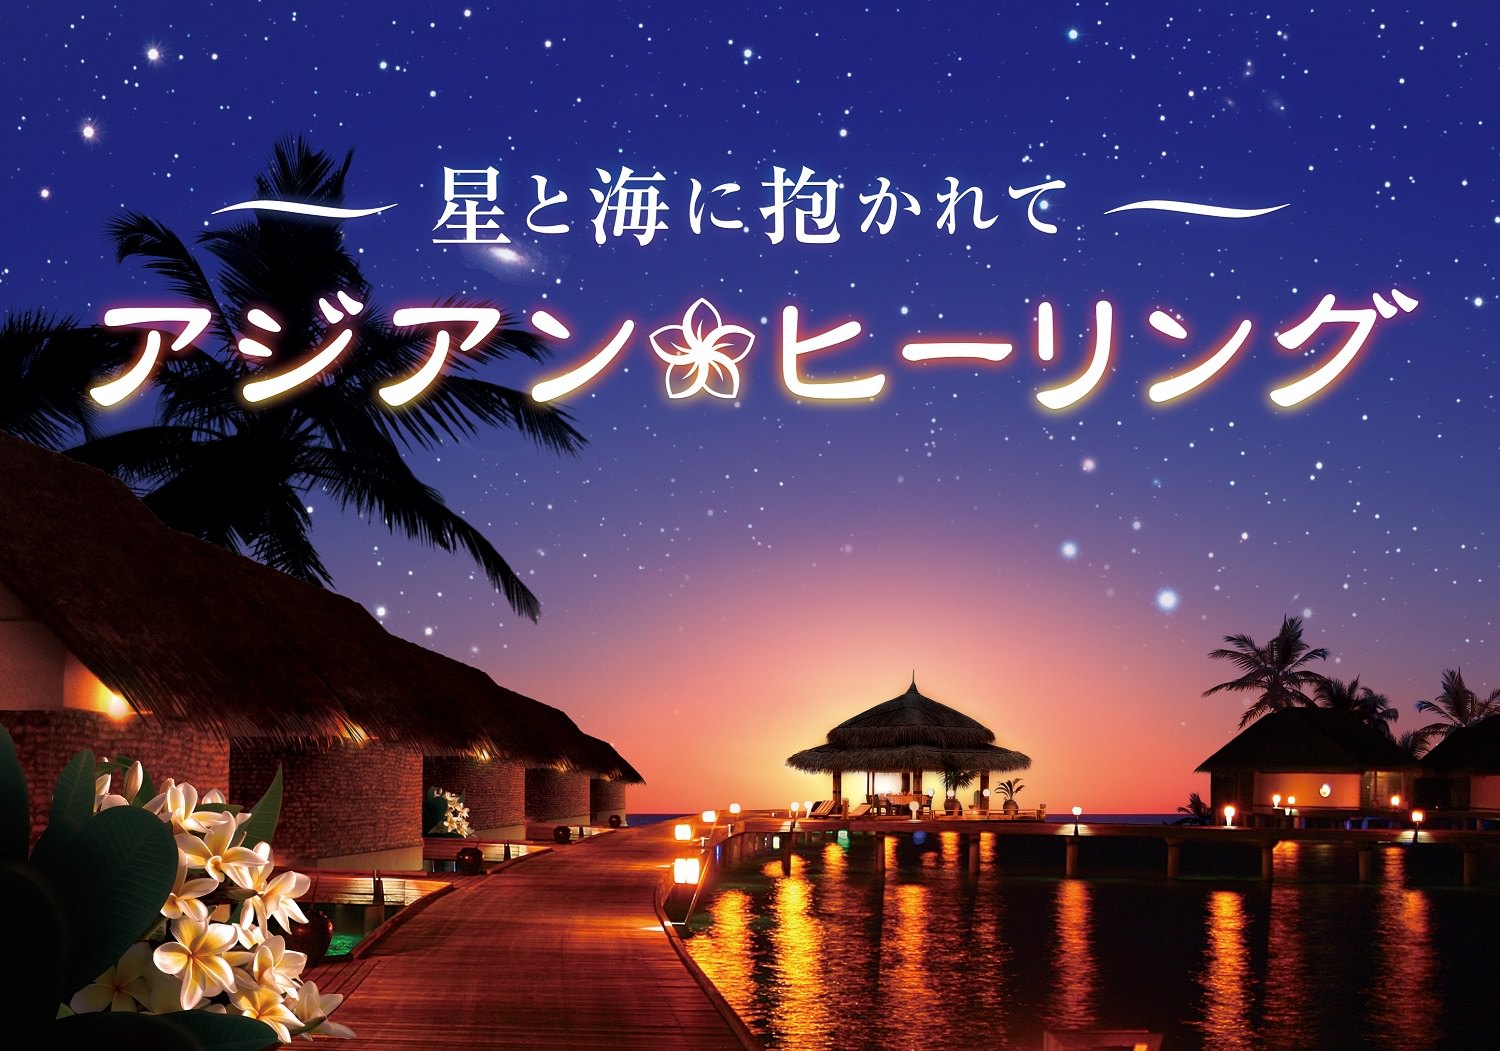 ようこそ、アジアンリゾートへ ヒーリングプラネタリウム作品
『星と海に抱かれて アジアンヒーリング』
2月20日（木）より上映開始！